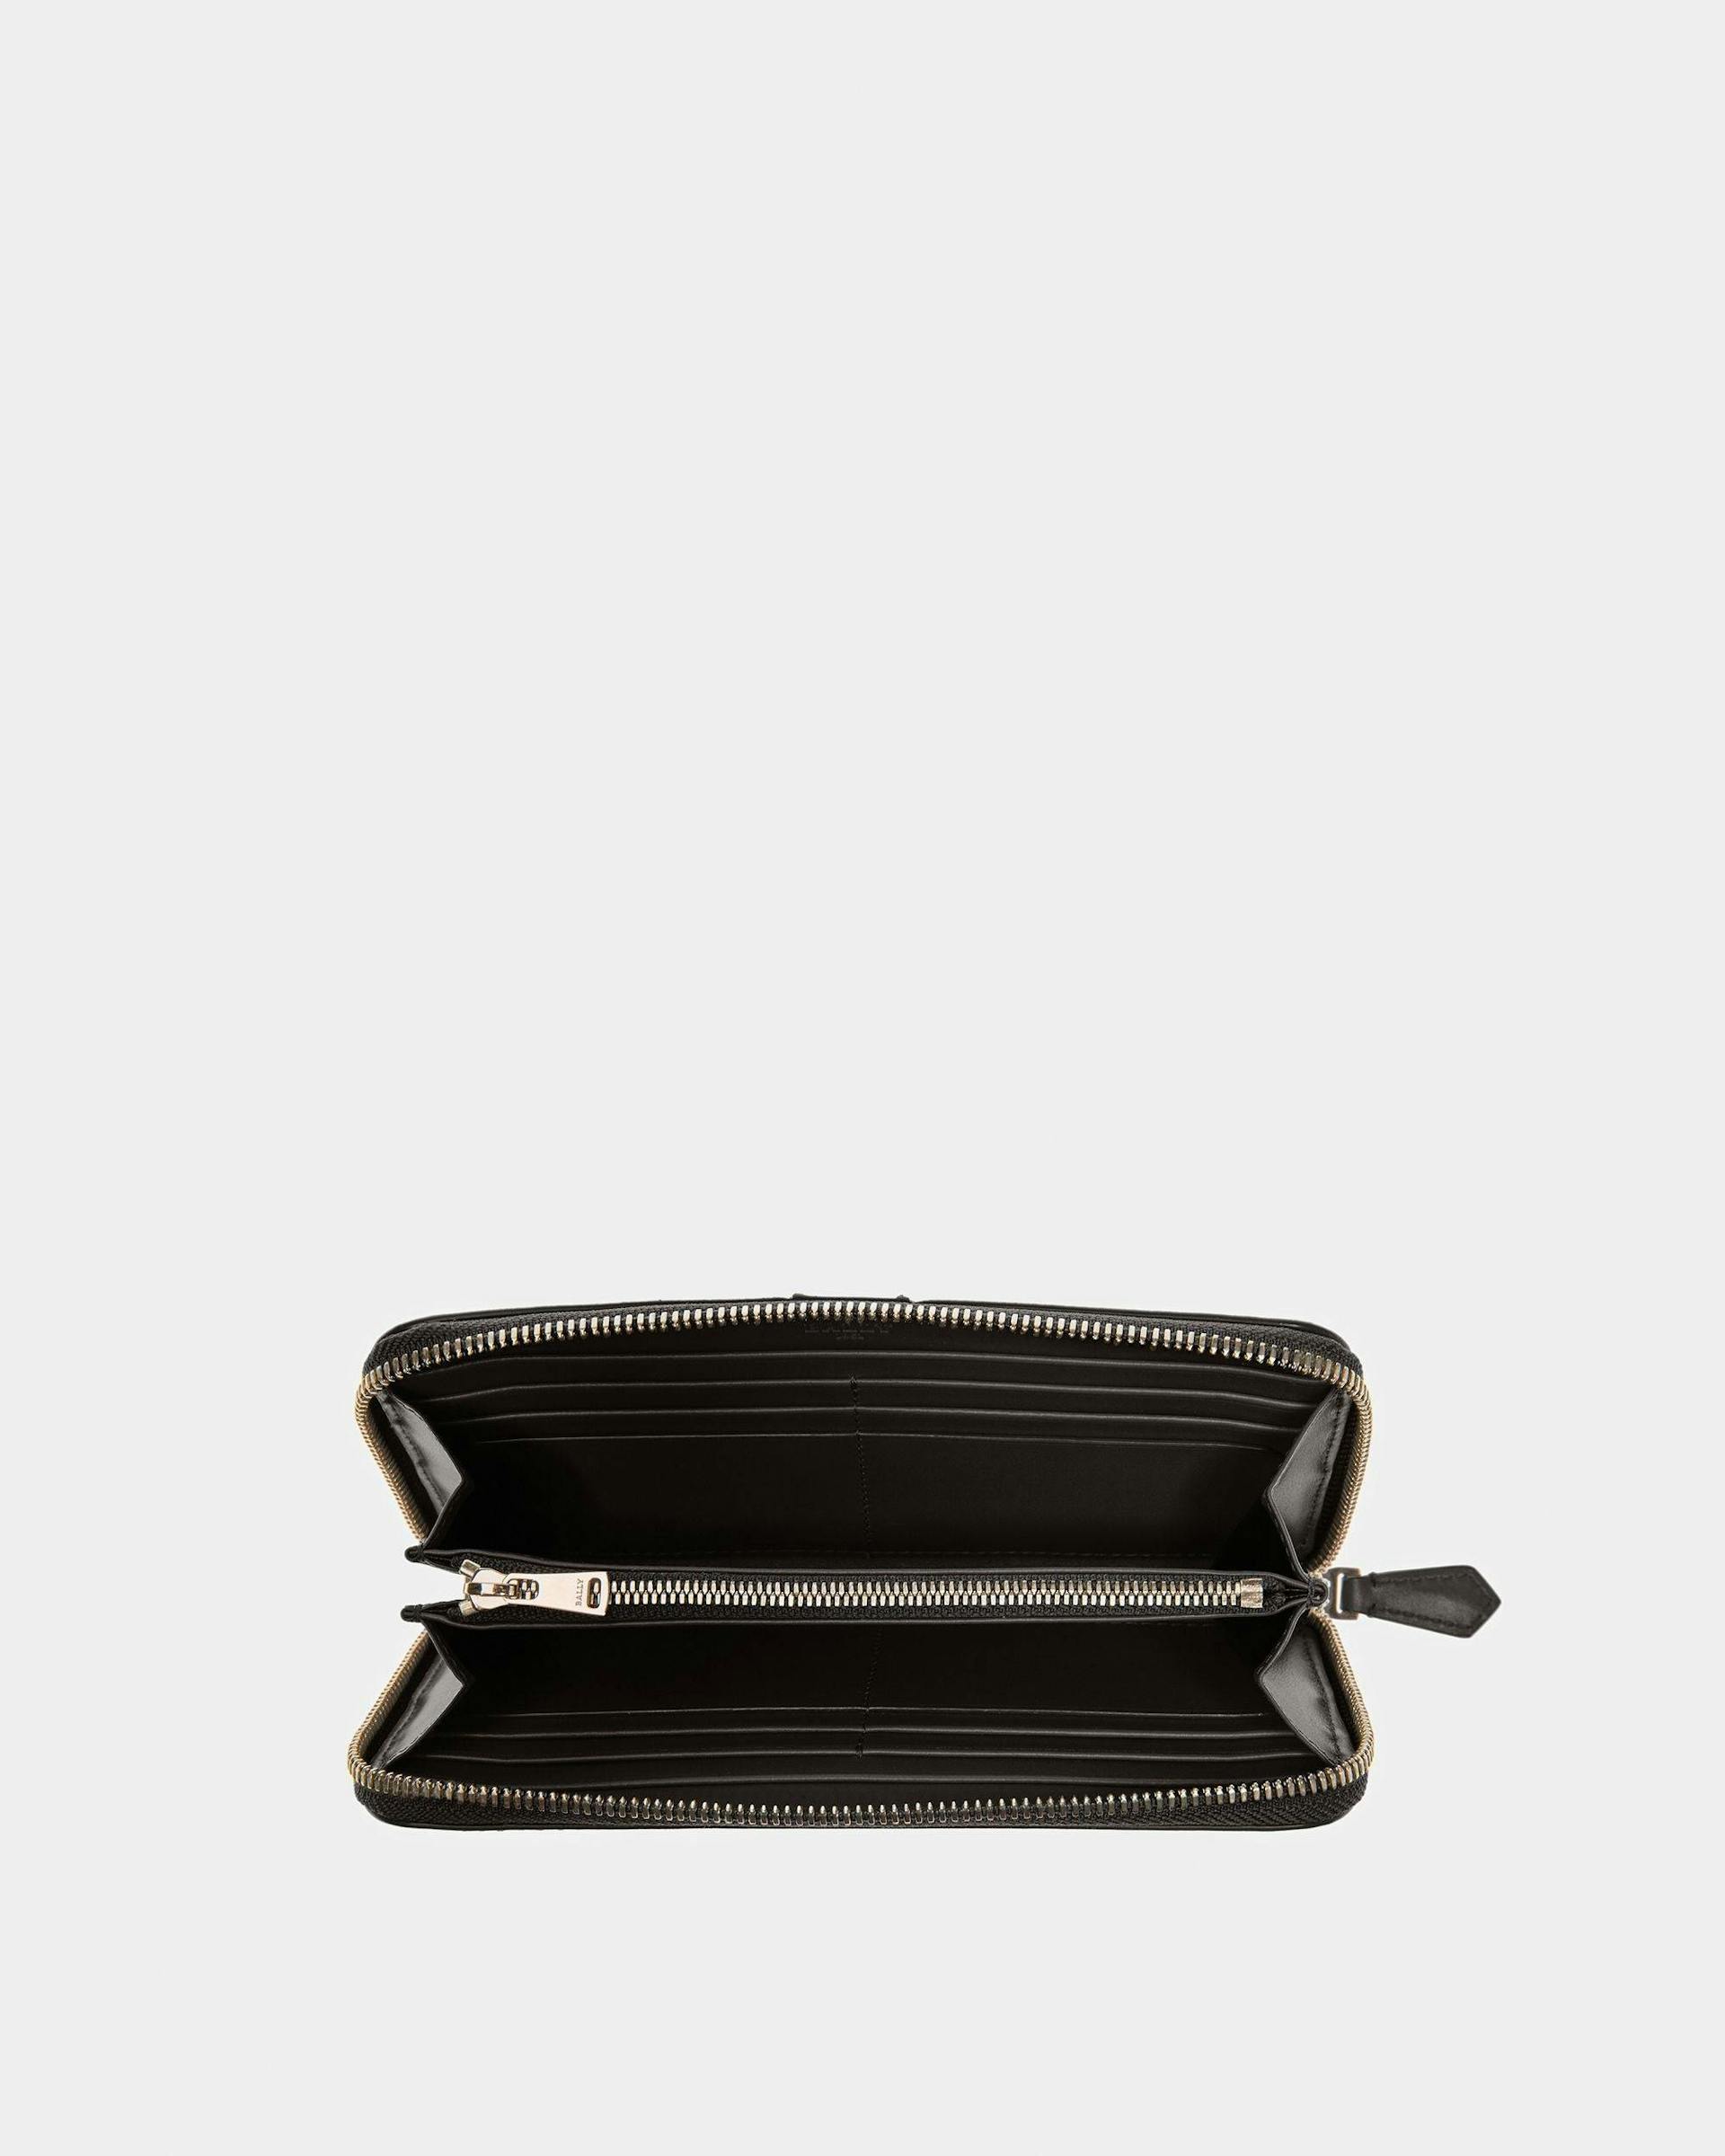 Avenor Leather Wallet In Black - Women's - Bally - 03